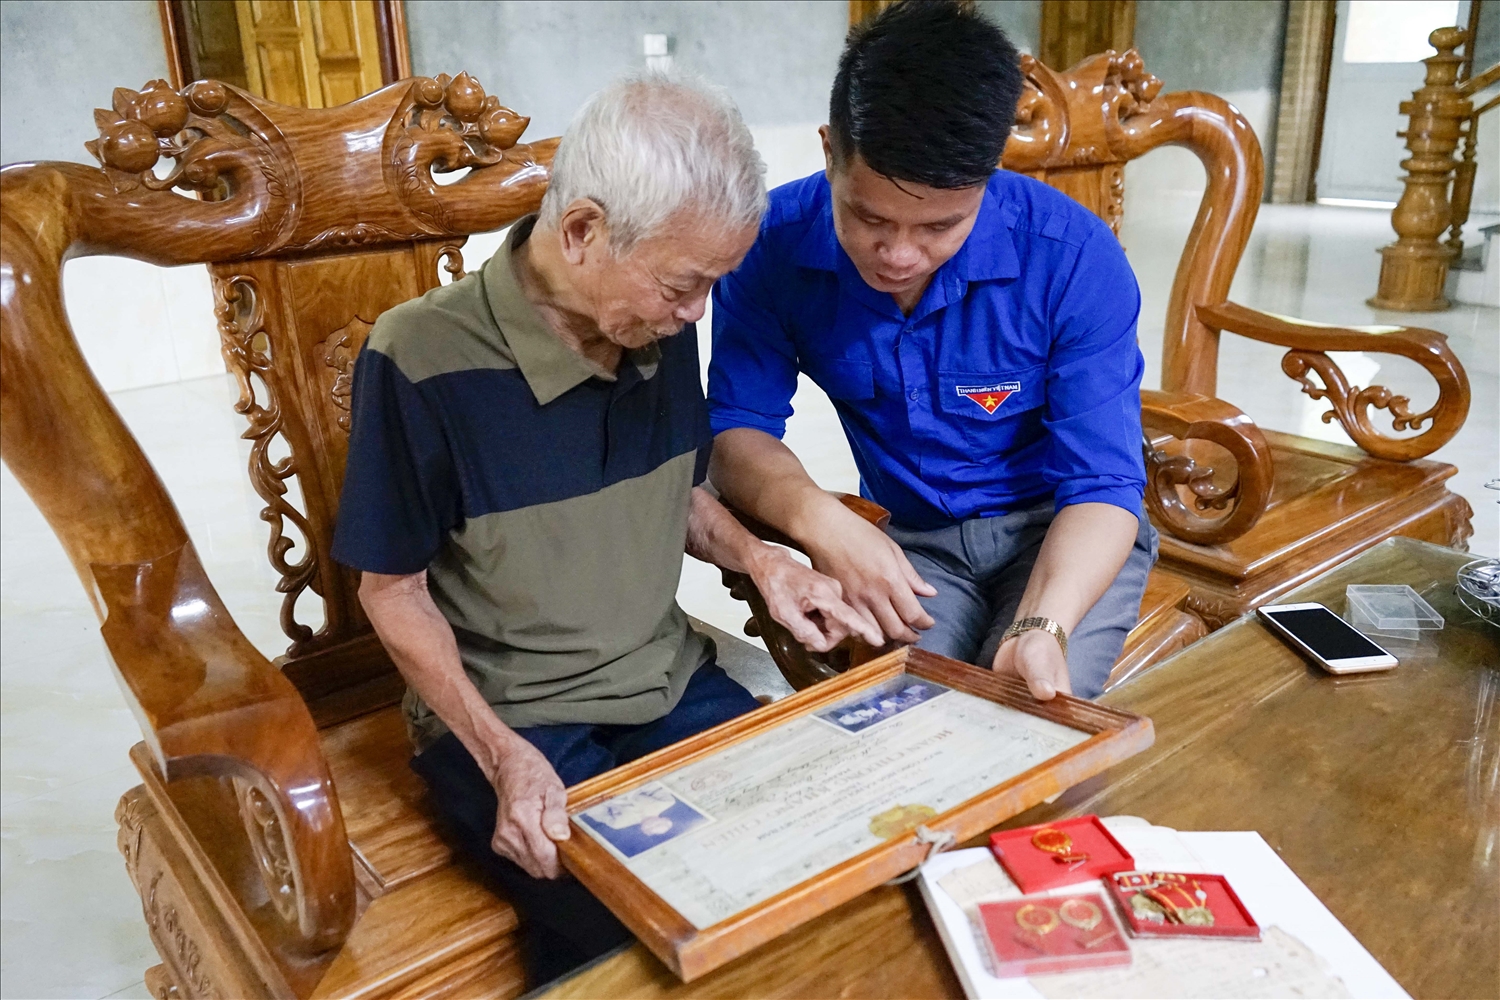 Ông Hoàng Văn Tam, thôn Làng Chạp, xã Trung Sơn, huyện Yên Sơn kể cho người trẻ nghe về kỷ niệm gặp Bác Hồ